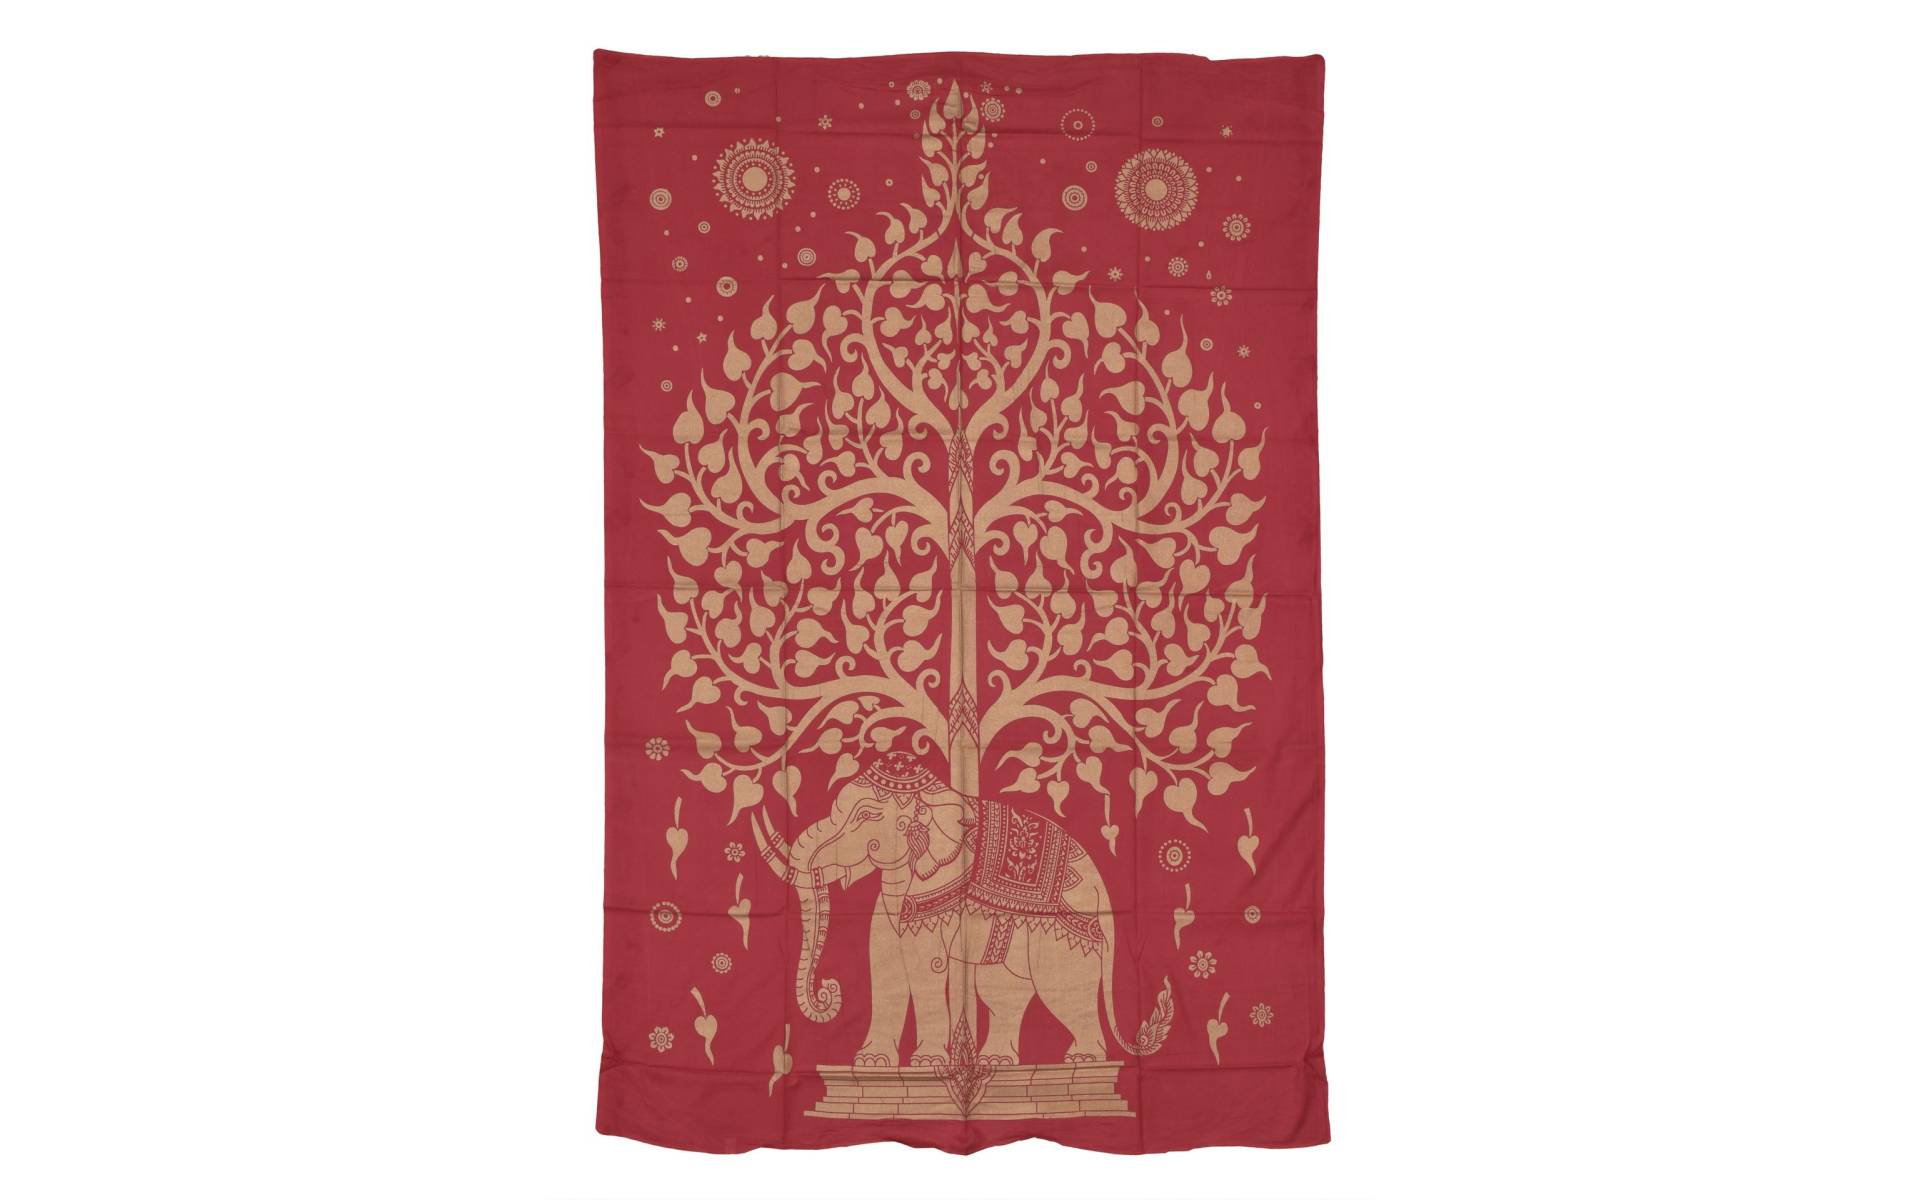 Prikrývka s tlačou, červená, zlatá tlač strom života a slon, 137x205cm